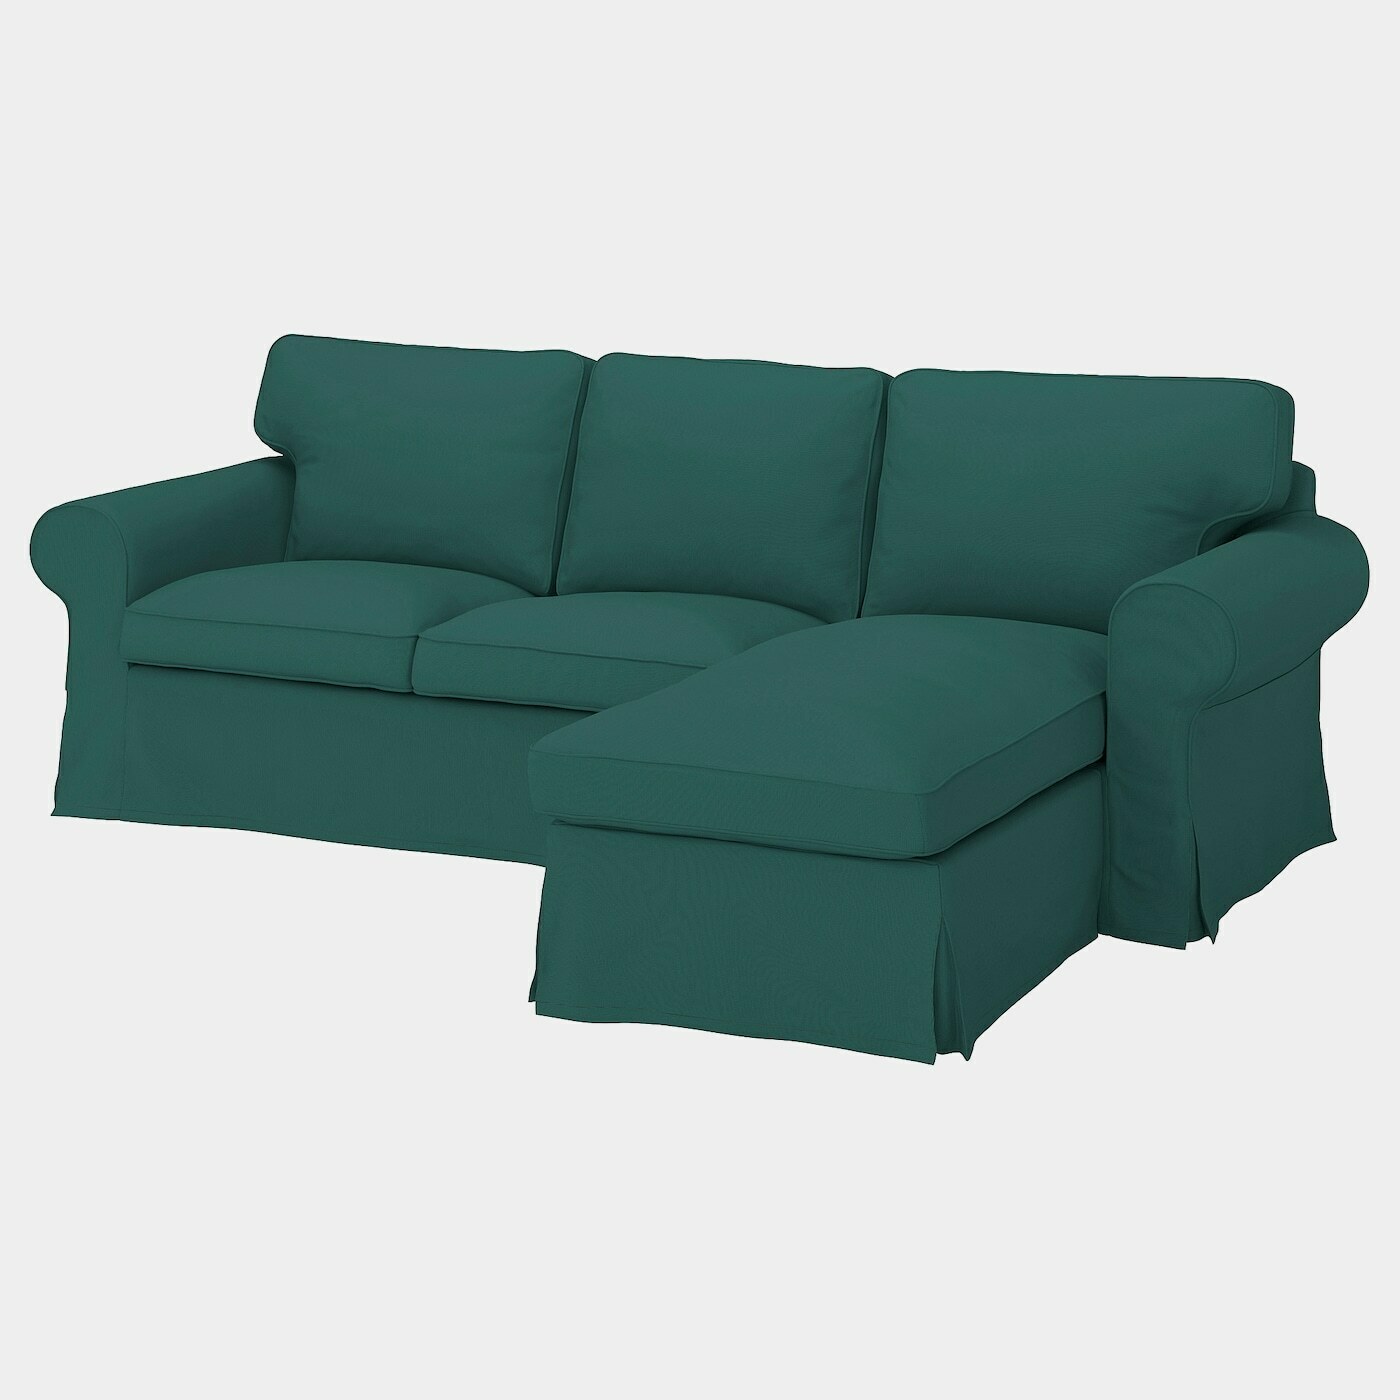 EKTORP 3er-Sofa mit Récamiere  -  - Möbel Ideen für dein Zuhause von Home Trends. Möbel Trends von Social Media Influencer für dein Skandi Zuhause.